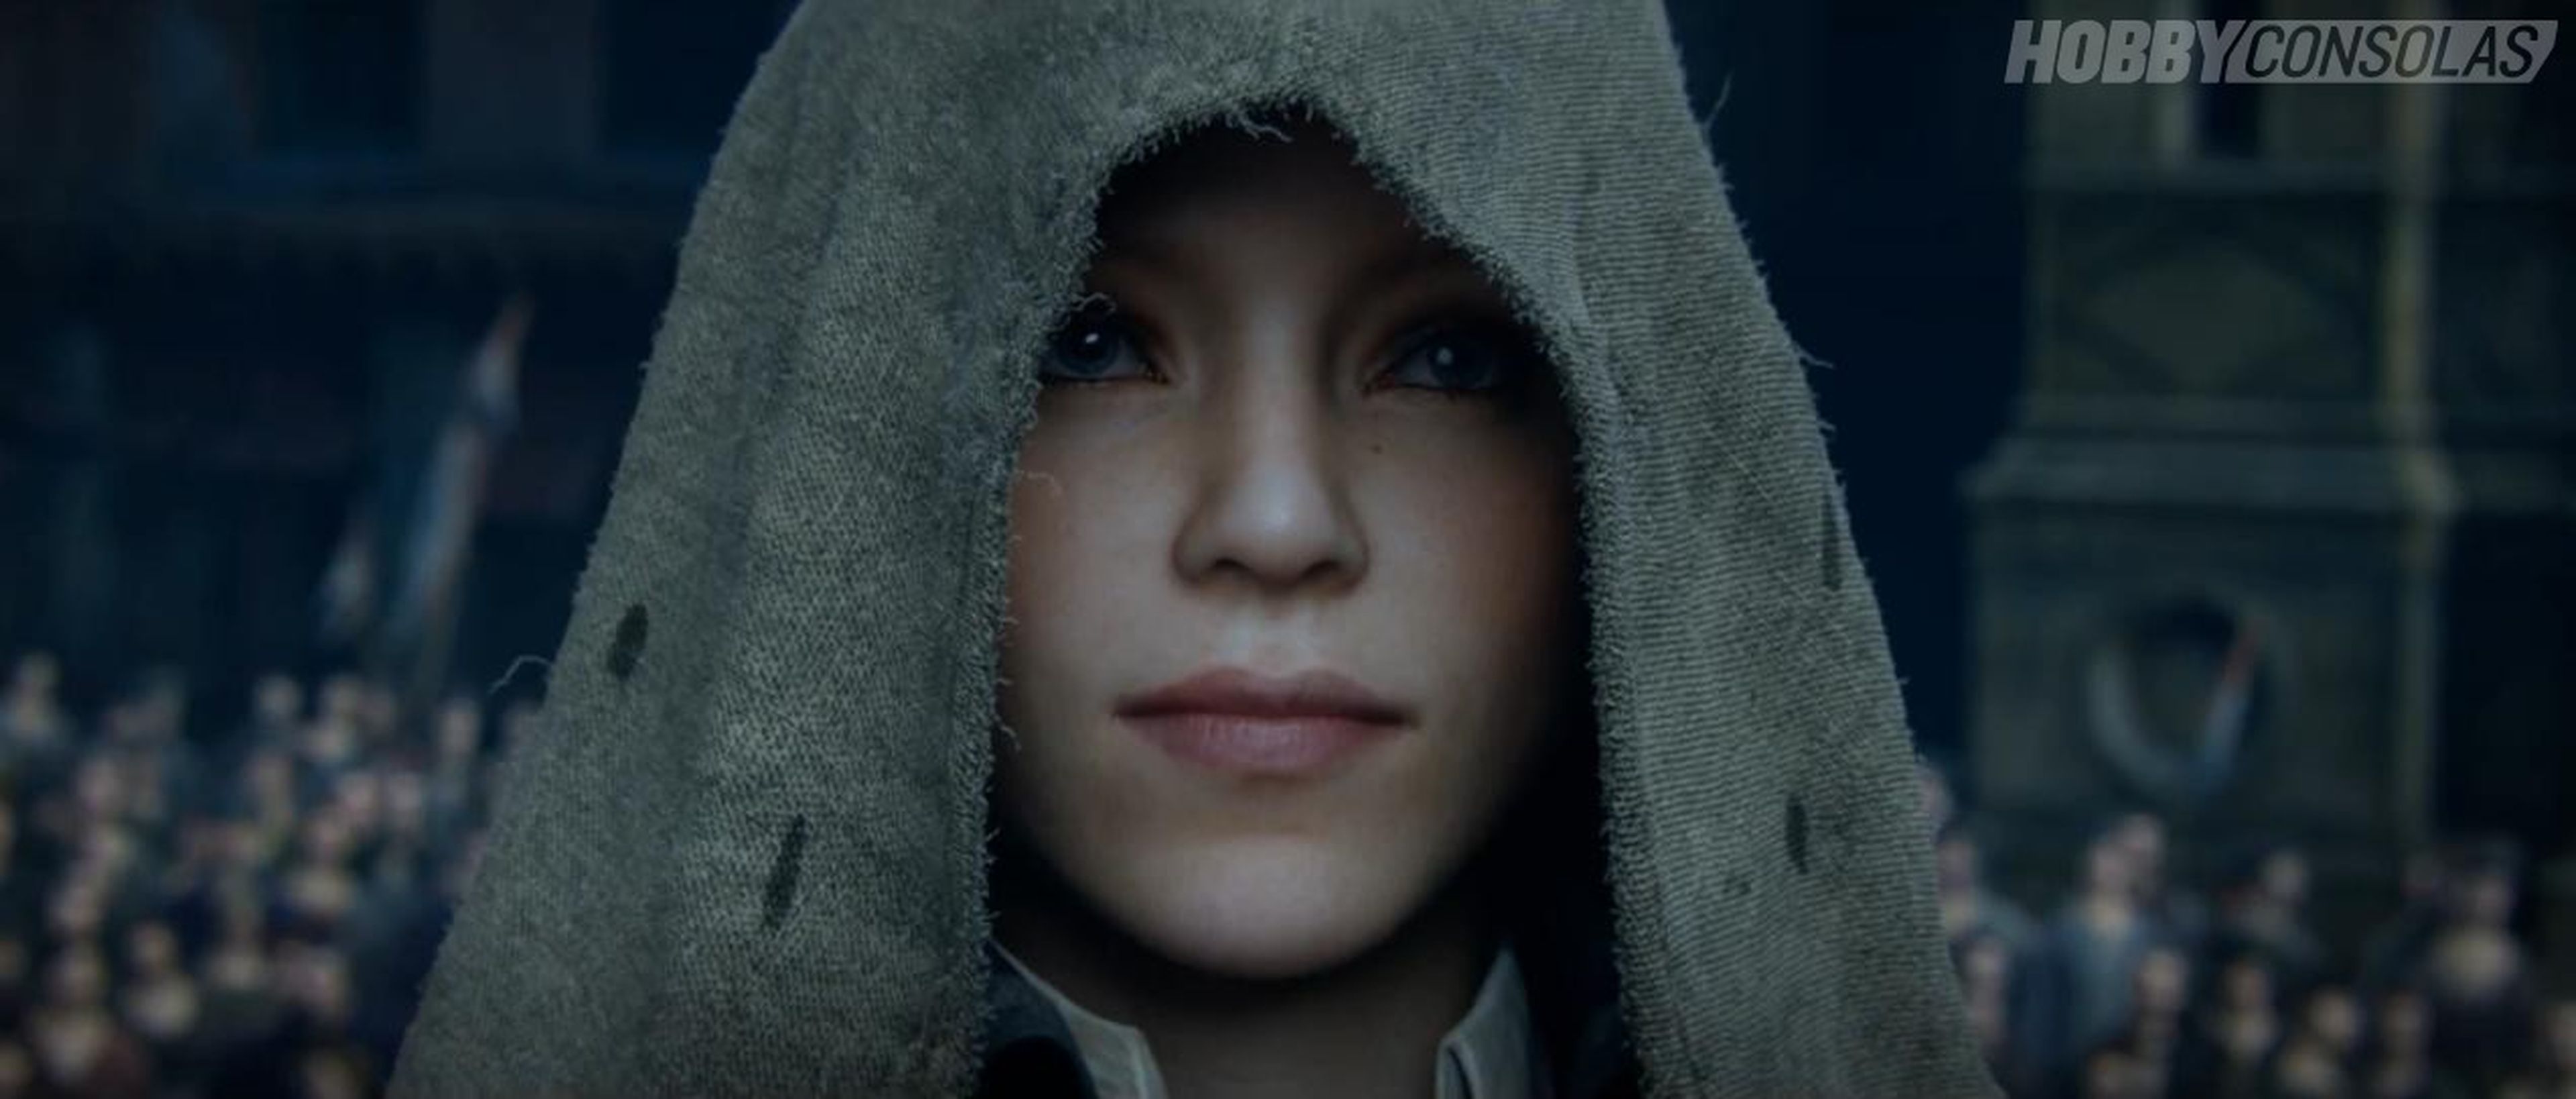 Nuevo tráiler CGI de Assassin's Creed Unity